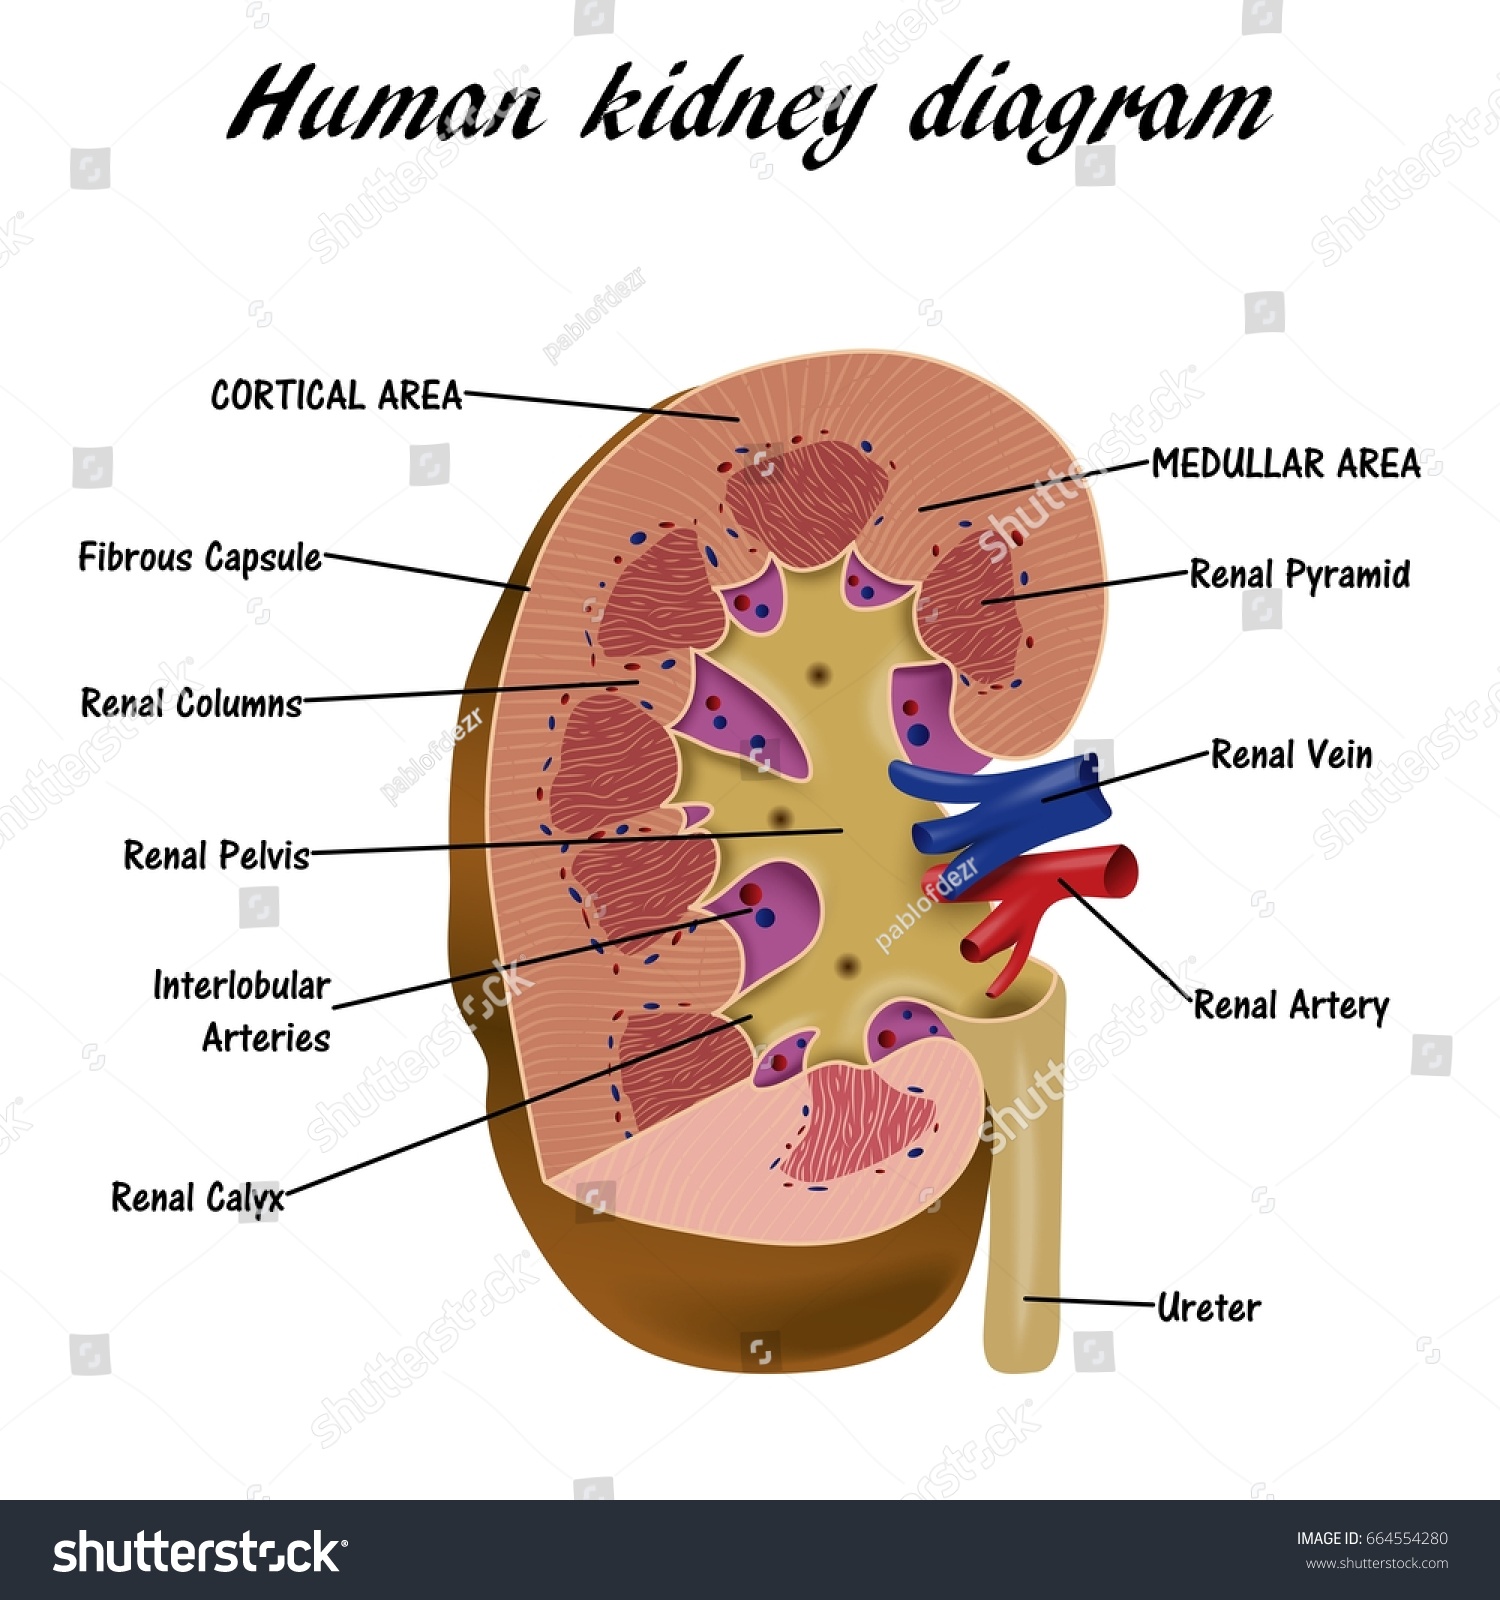 Human Kidney Diagram Stock Vector 664554280 - Shutterstock